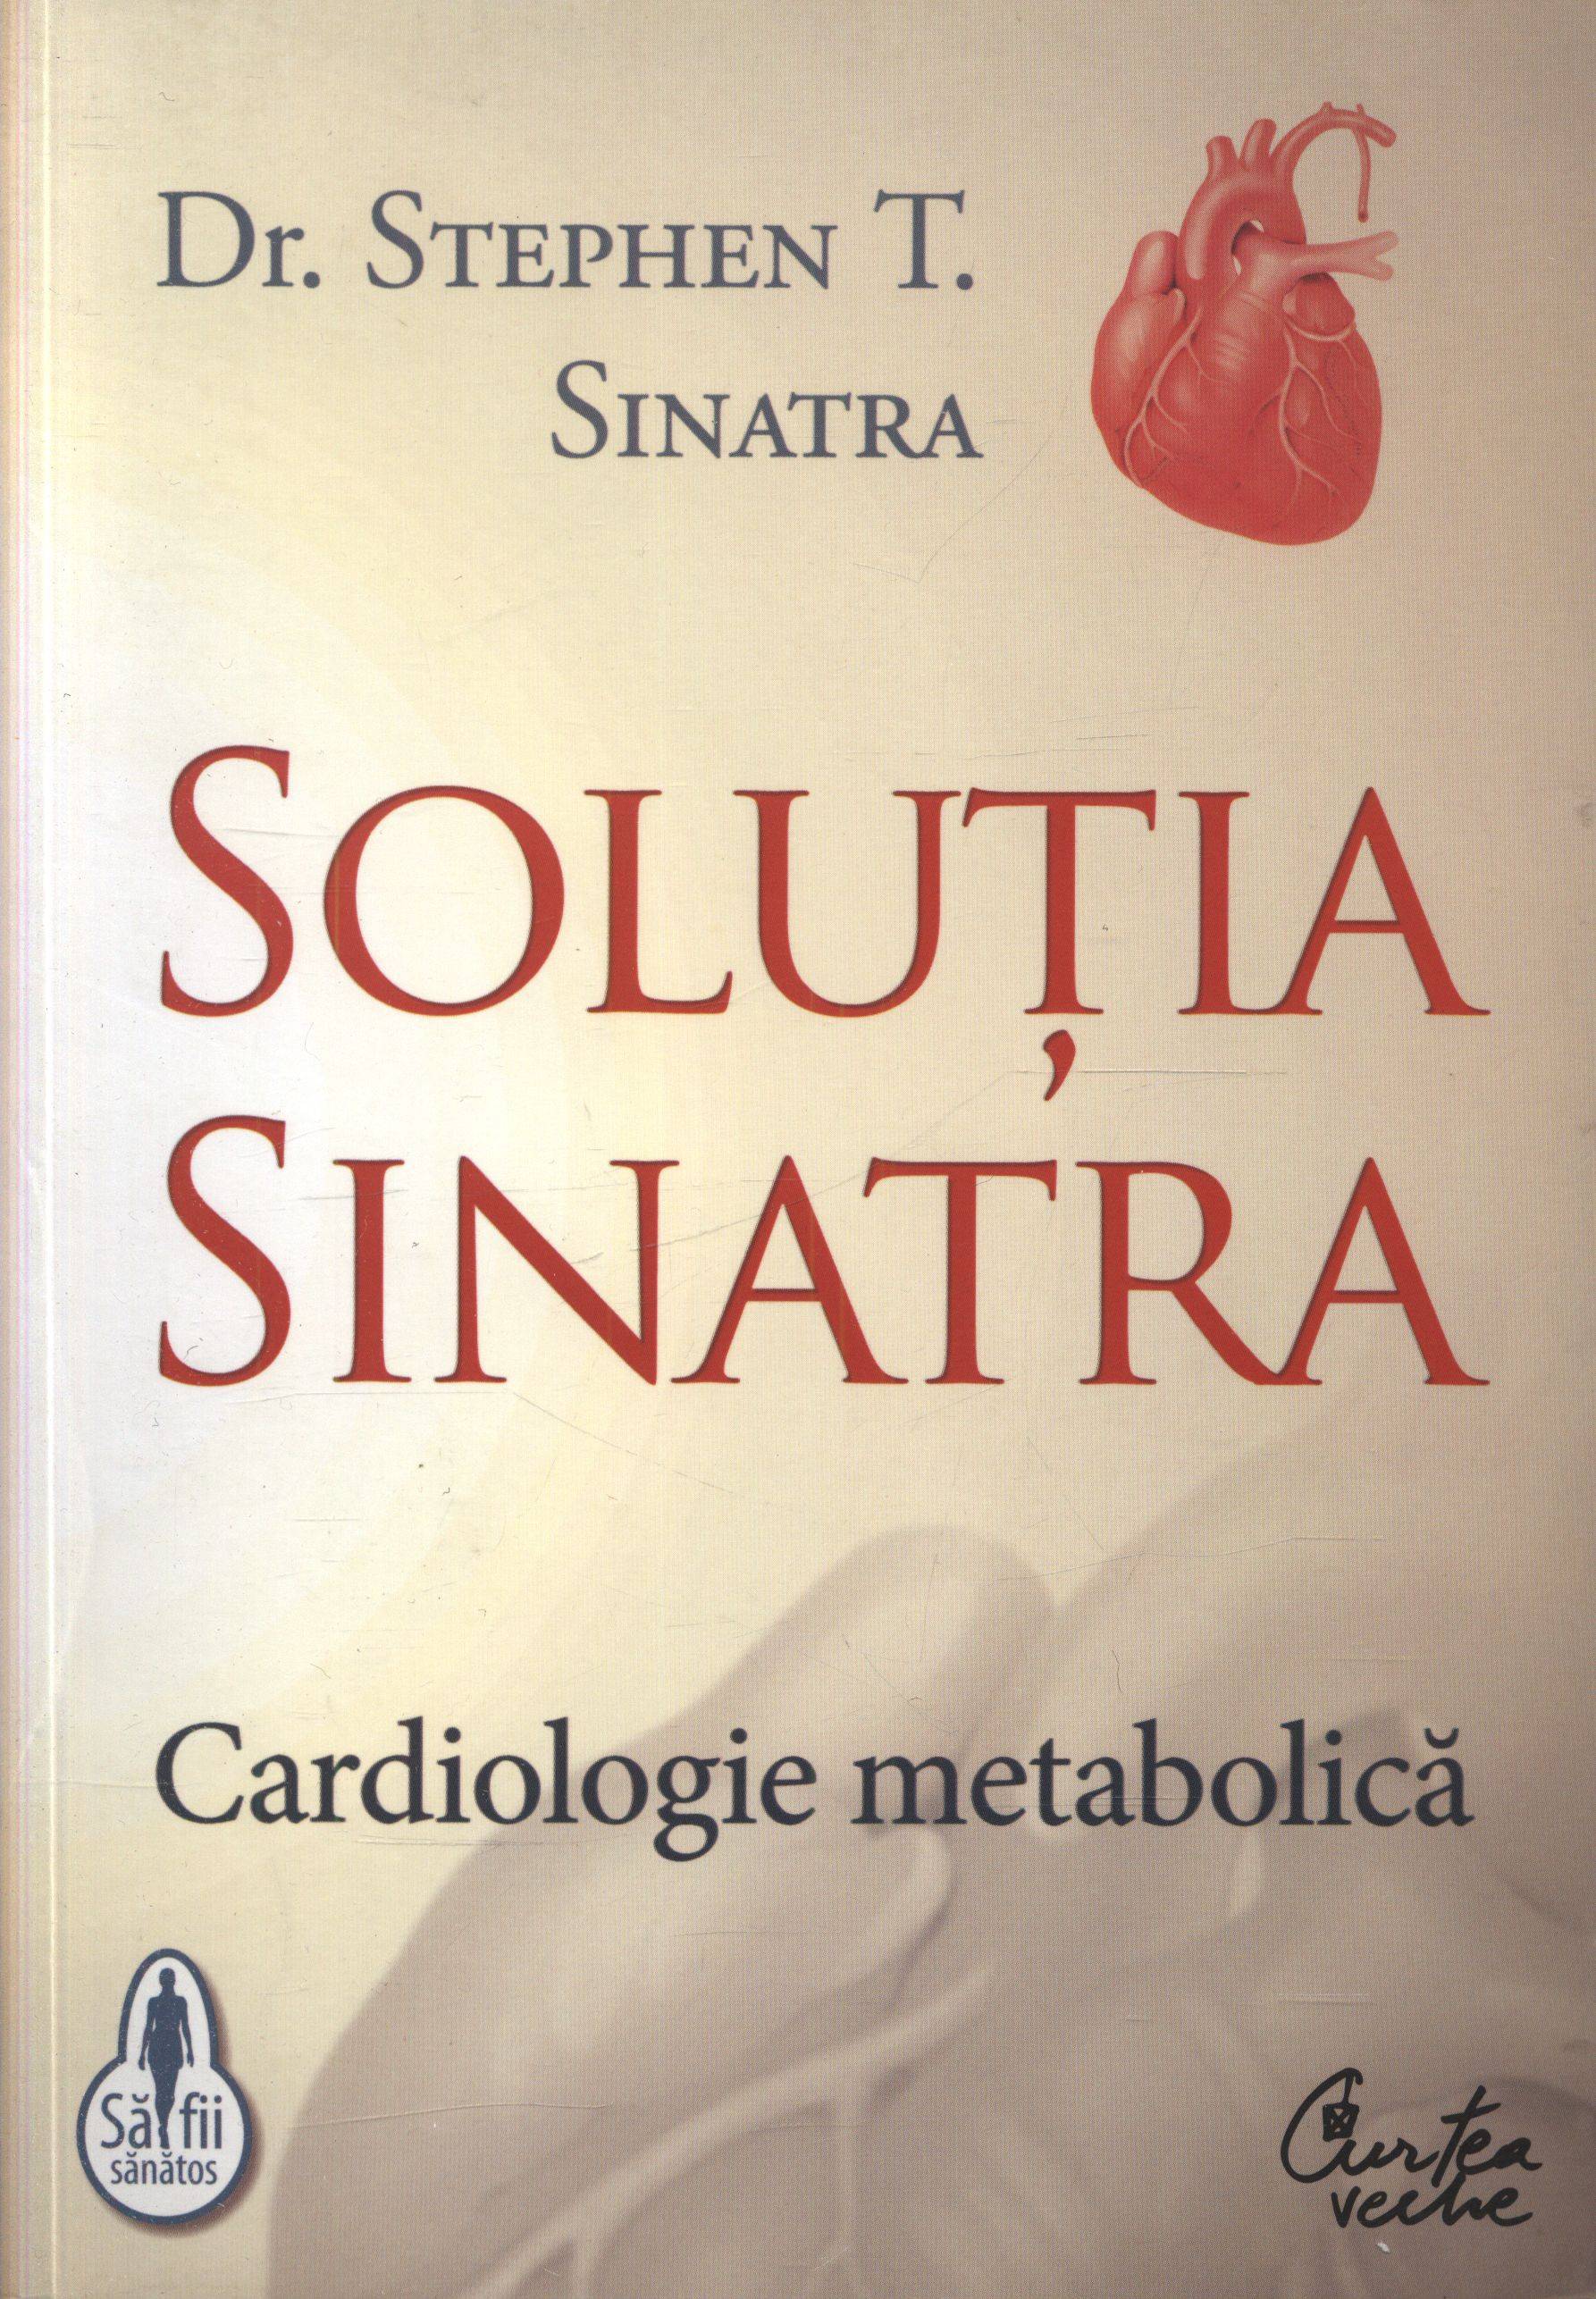 Solutia Sinatra - Cardiologie metabolica | Dr. Stephen T. Sinatra